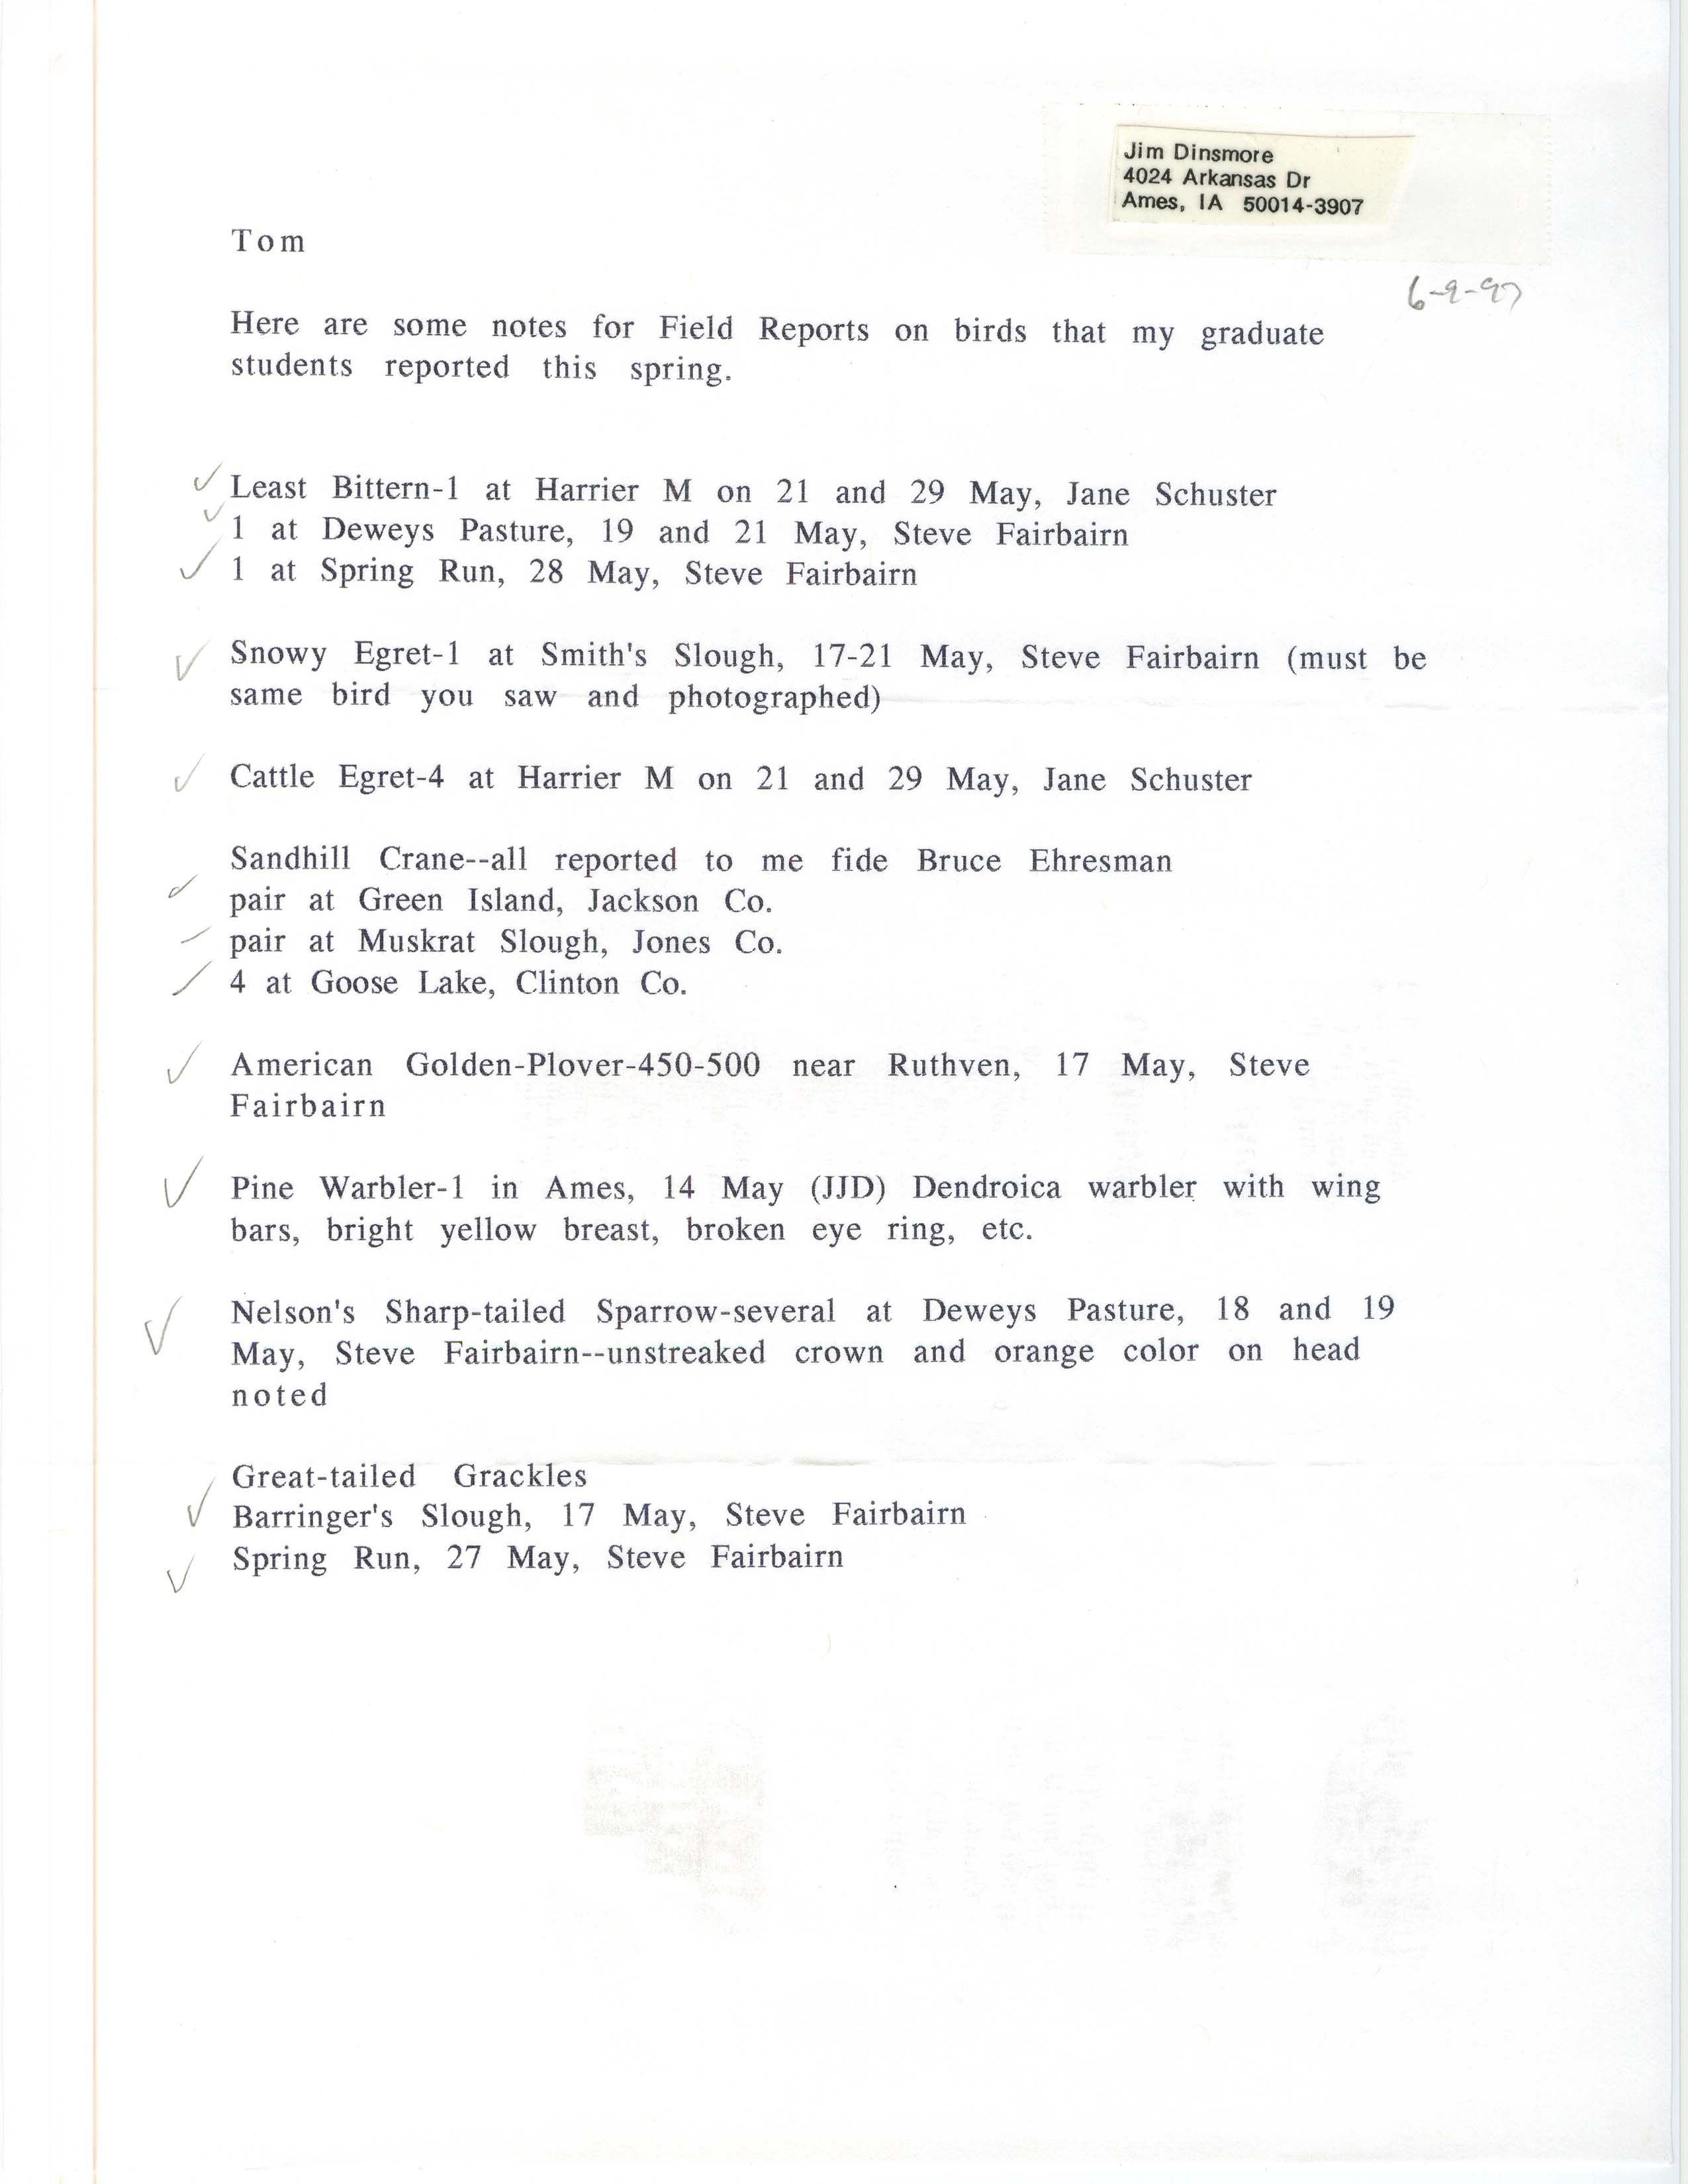 James J. Dinsmore letter to Thomas H. Kent regarding bird sightings, spring 1997